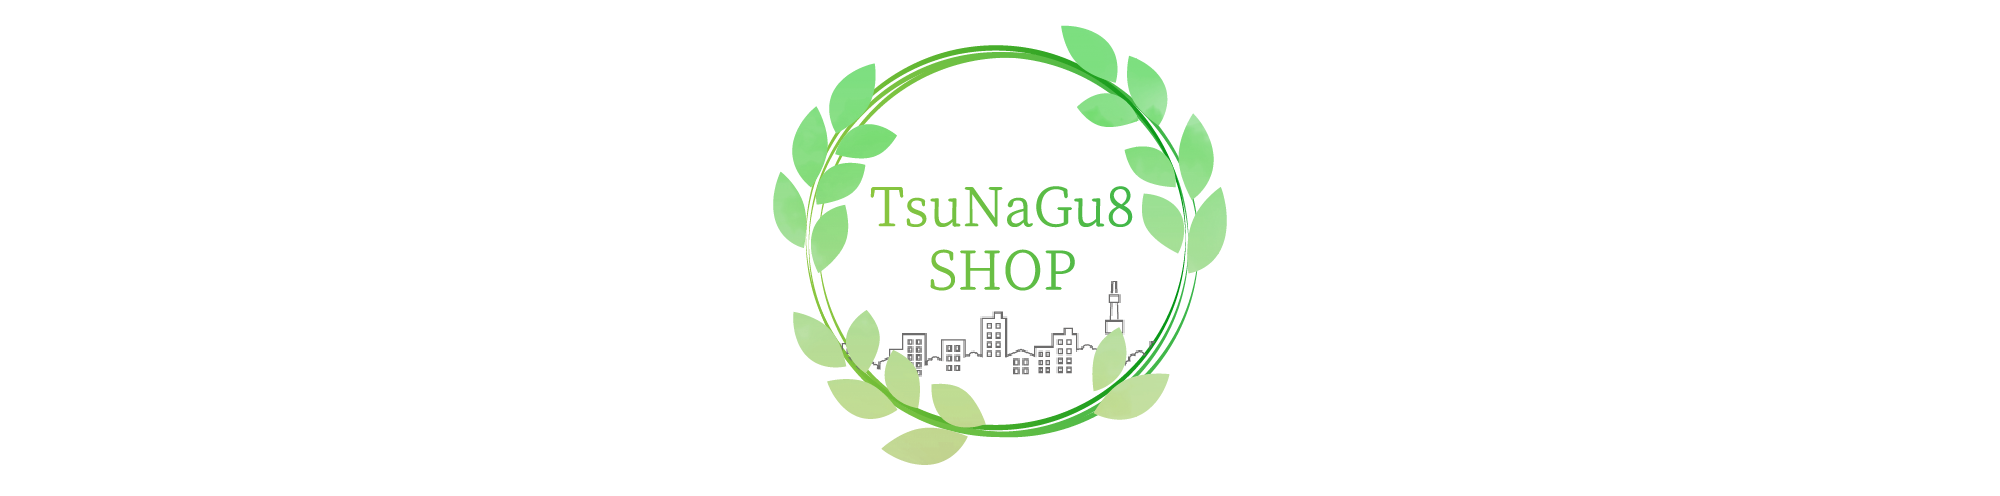 TsuNaGu8 SHOP